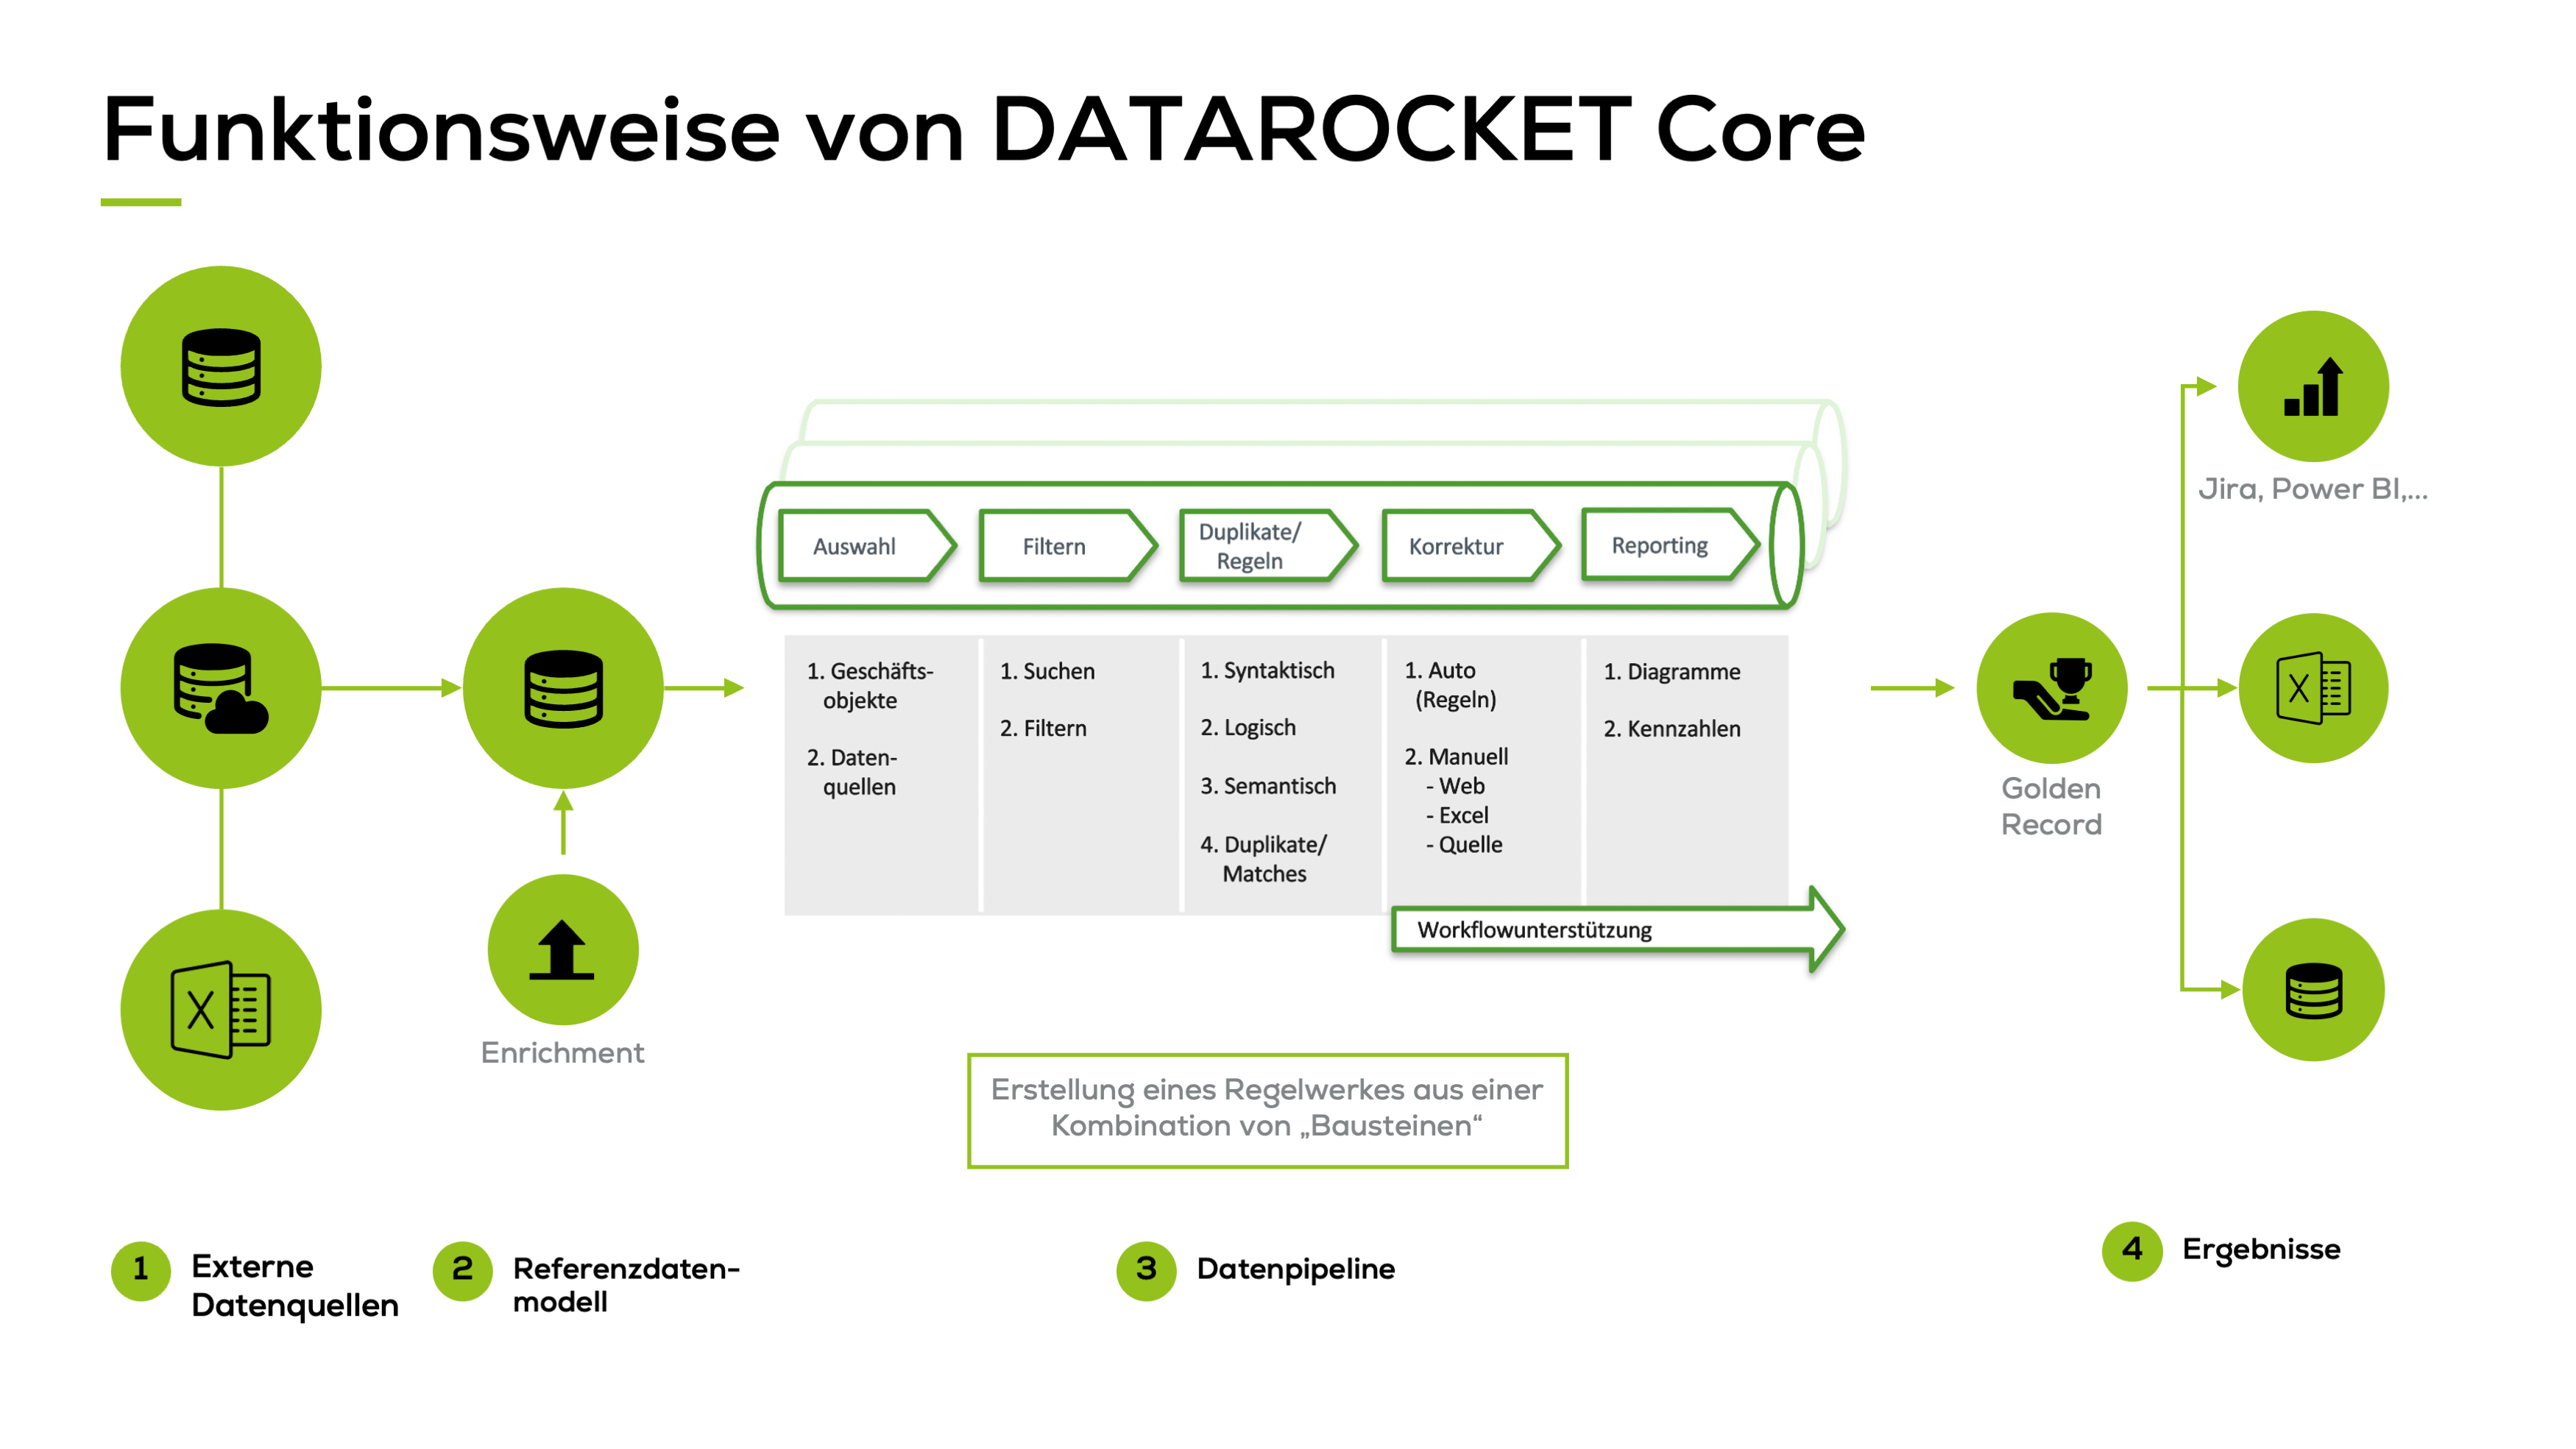 Schaubild: DATAROCKET Core als Stammdatenmanagement-Tool lädt Daten aus einer externen Datenquelle, Mappt diese im Referenzdatenmodell, analysiert, berinigt und pflegt die Daten und produziert Golden Records zur Weiterverarbeitung in DATAROCKET oder externen Tools